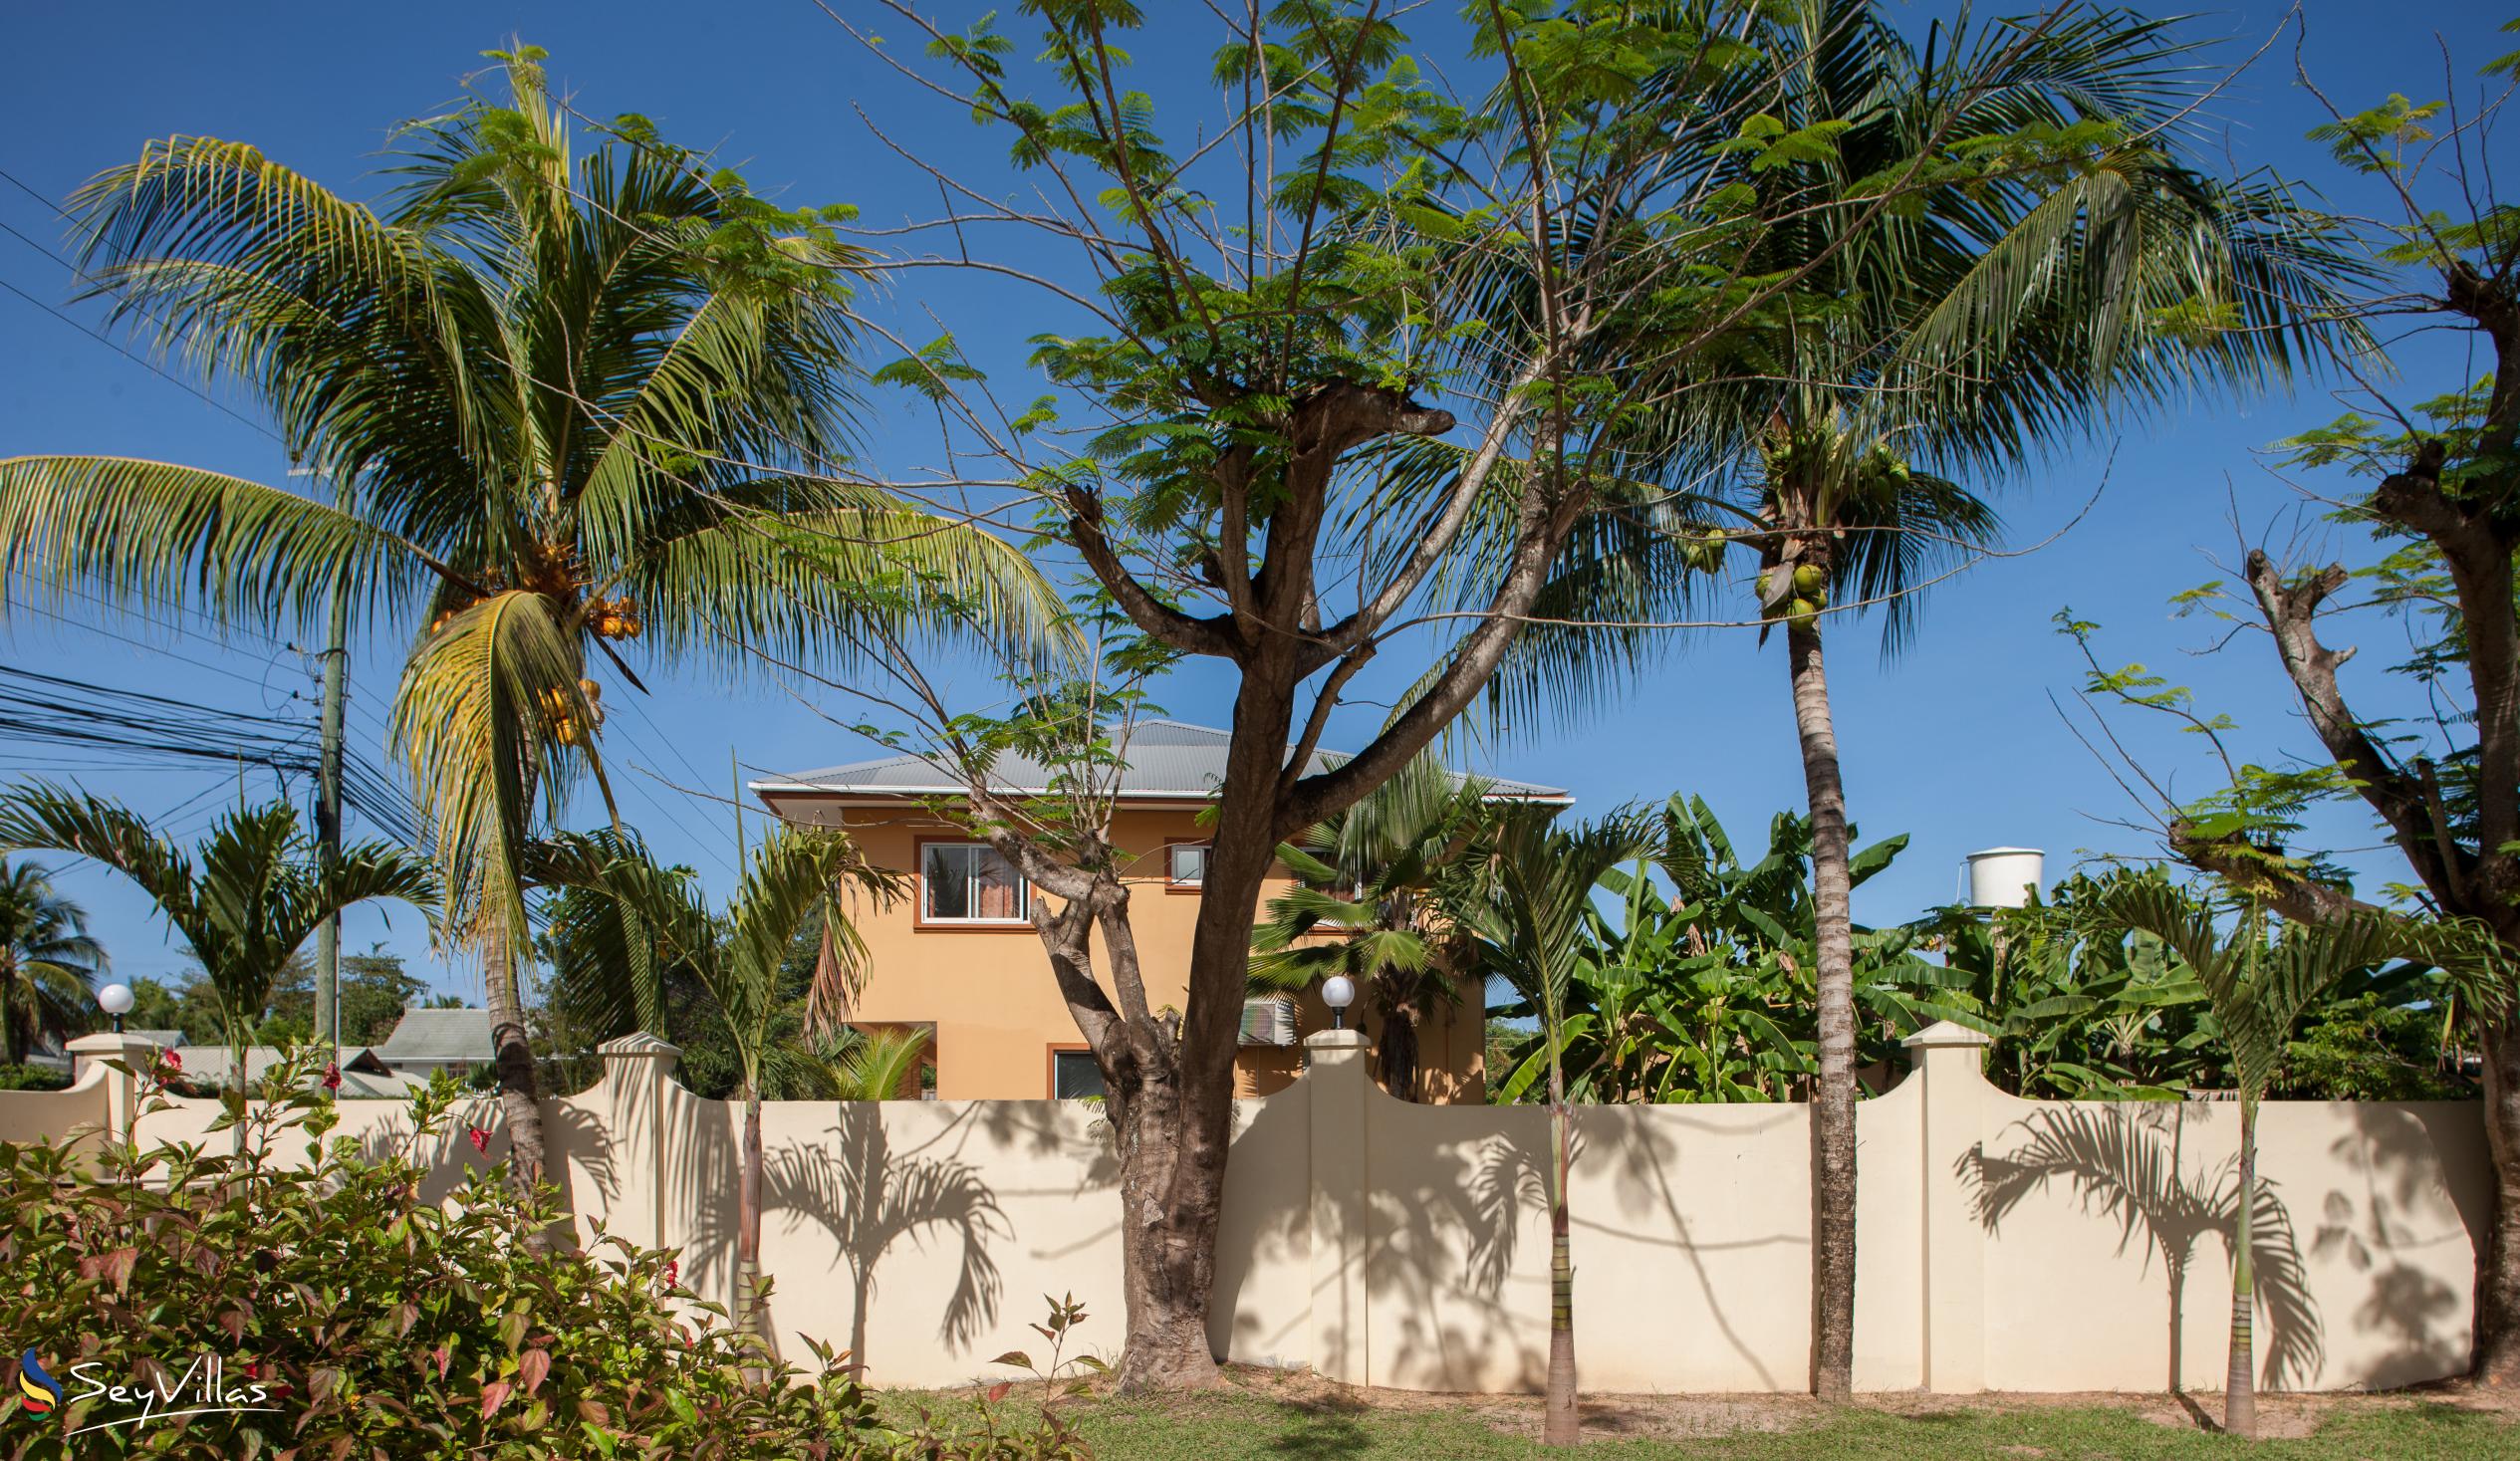 Foto 49: Villa Confort - Aussenbereich - Praslin (Seychellen)